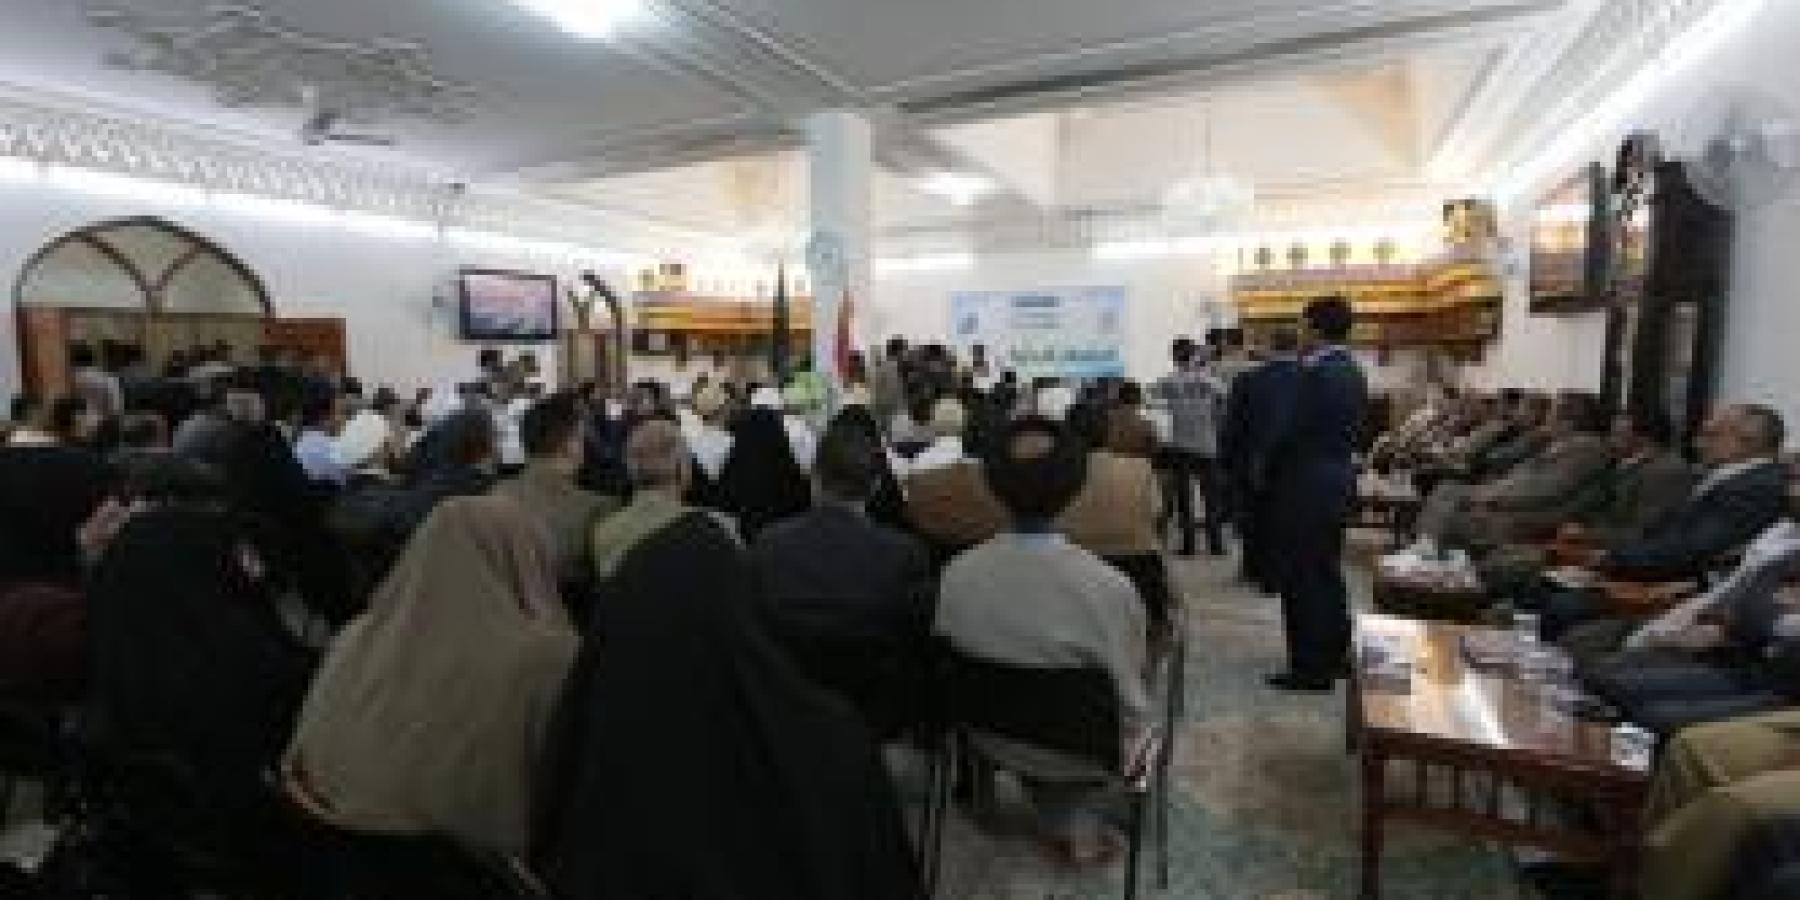 انطلاق فعاليات الجلسات الشعرية على هامش مهرجان الغدير العالمي الثالث في رحاب الحرم العلوي الطاهر